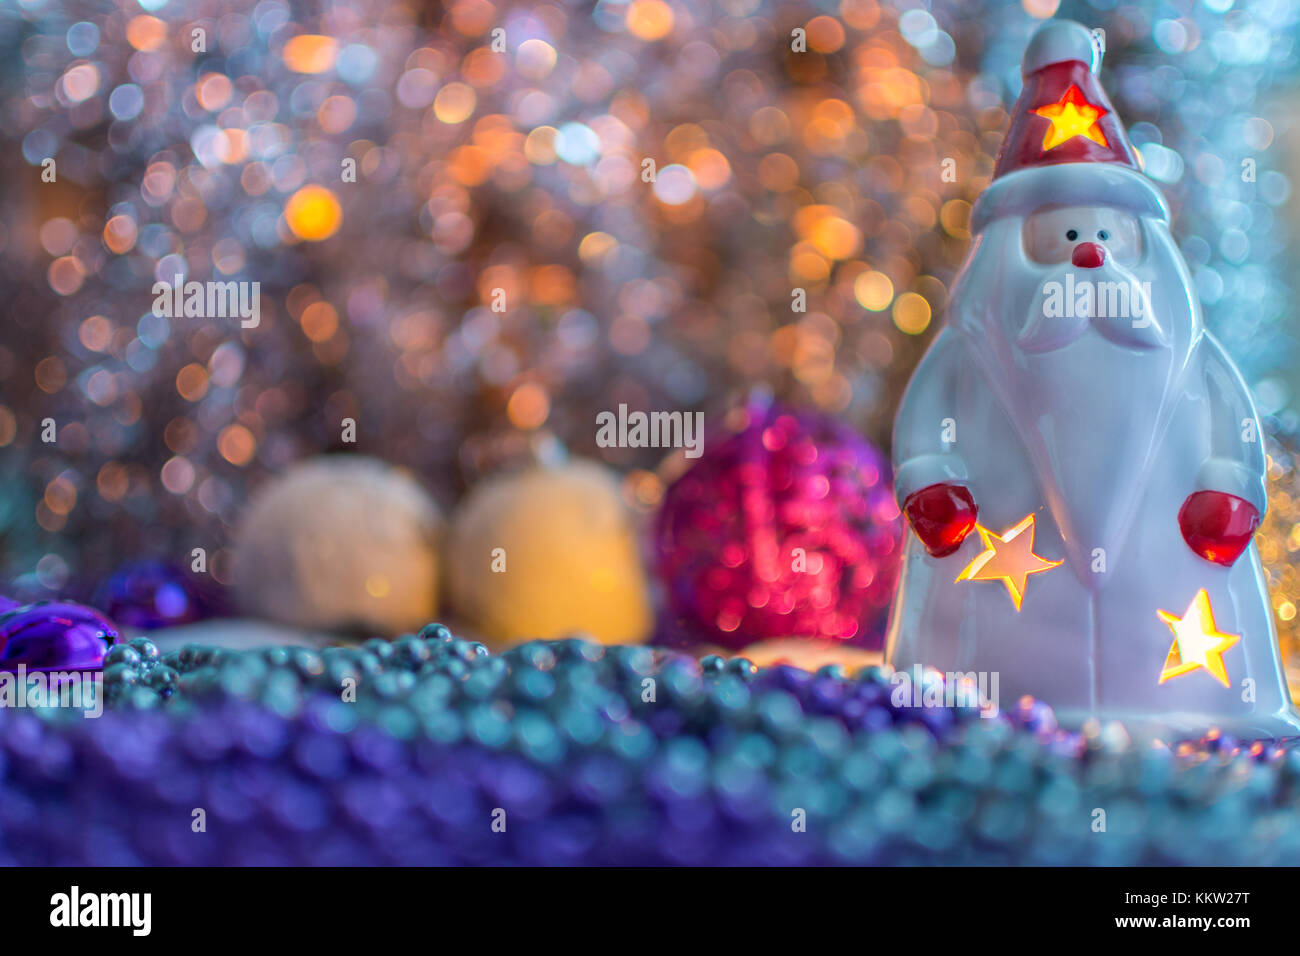 Bunte Weihnachtsdekorationen Santa mit einer Kerze im Innern, auf extrem geringe Tiefenschärfe und cremig gelben Hintergrund. Stockfoto